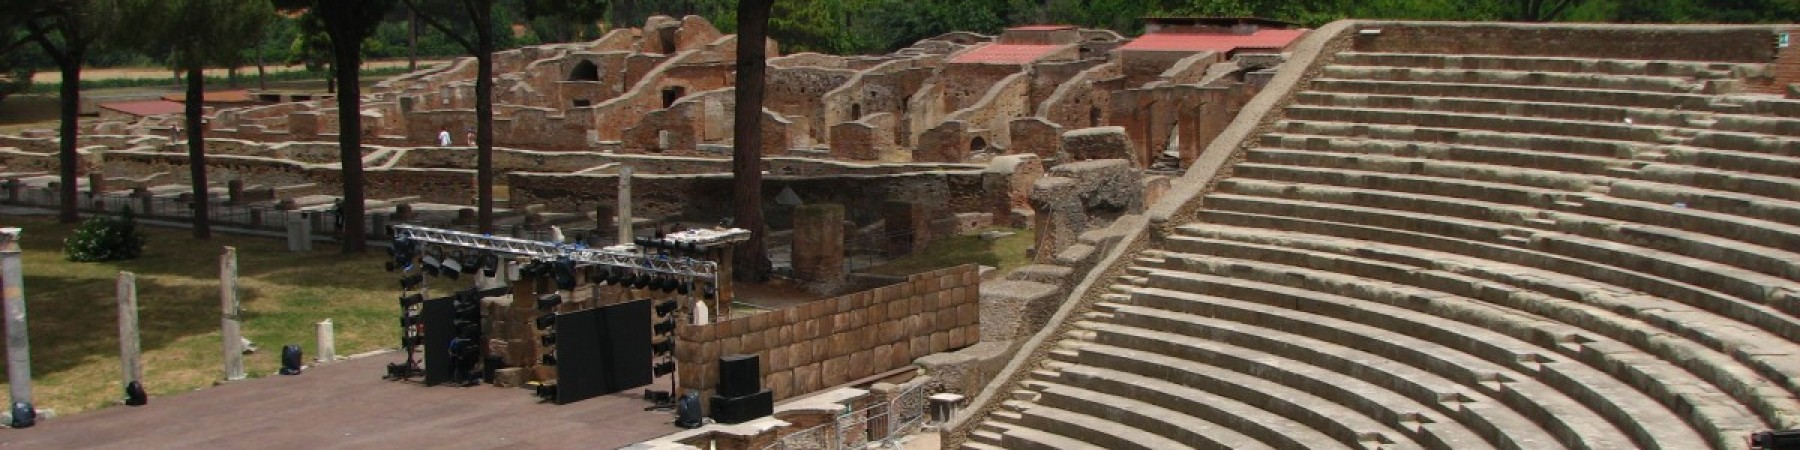 Schools Tour Guidato - Ancient Ostia